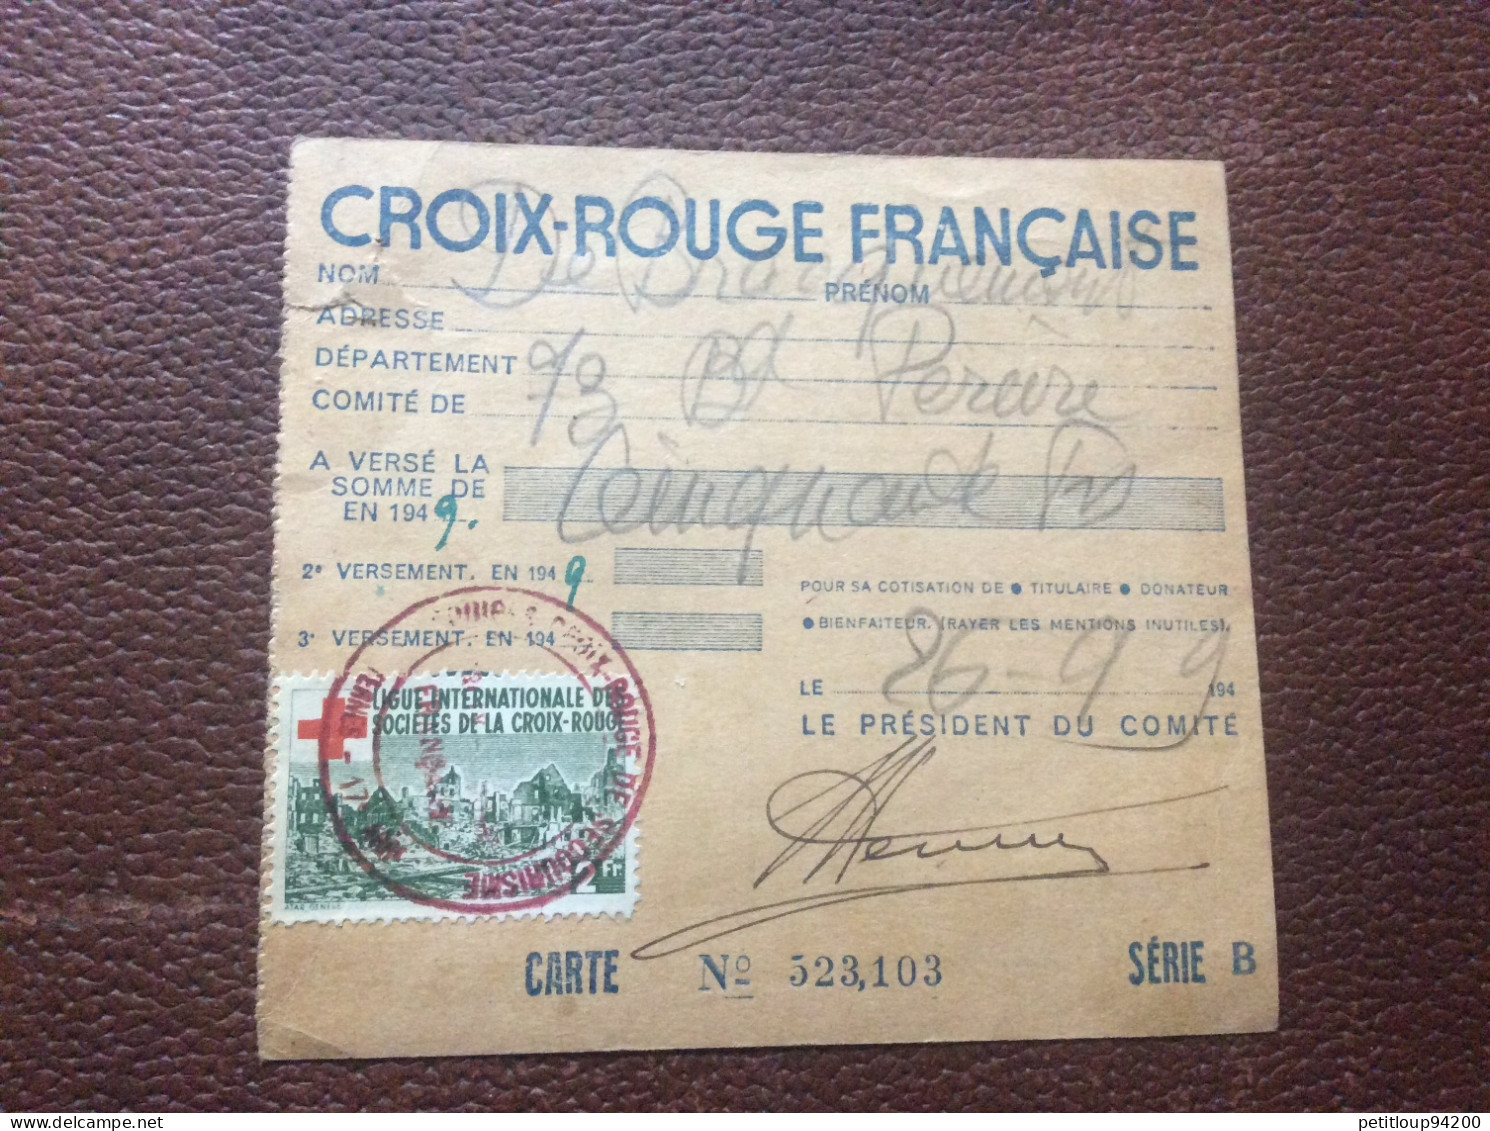 CROIX ROUGE FRANÇAISE  Carte D’Adherent  ANNÉE 1949 - Rode Kruis